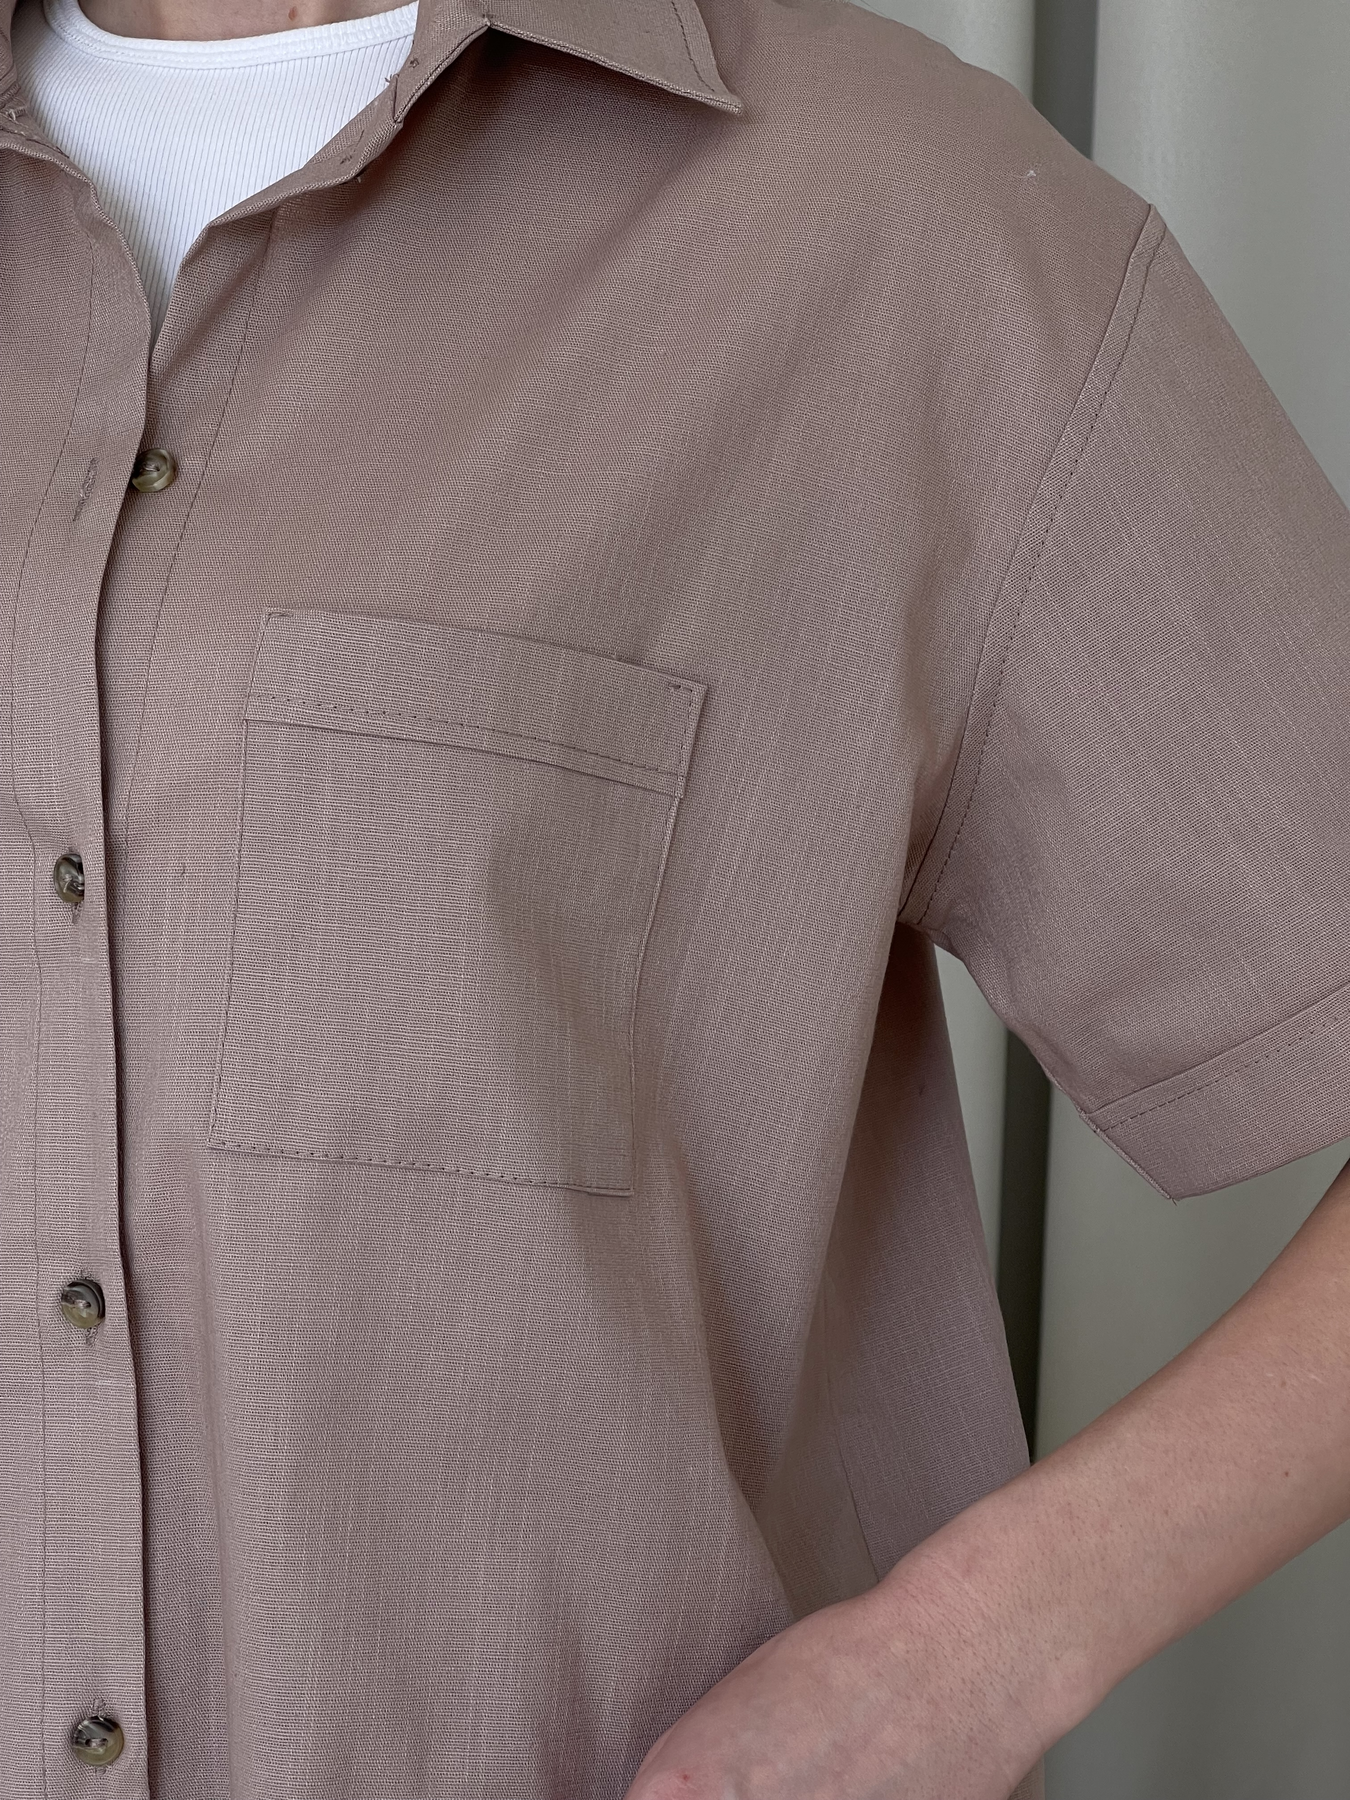 Купить Льняная рубашка с коротким рукавом бежевая Merlini Нино 200001204 размер 42-44 (S-M) в интернет-магазине